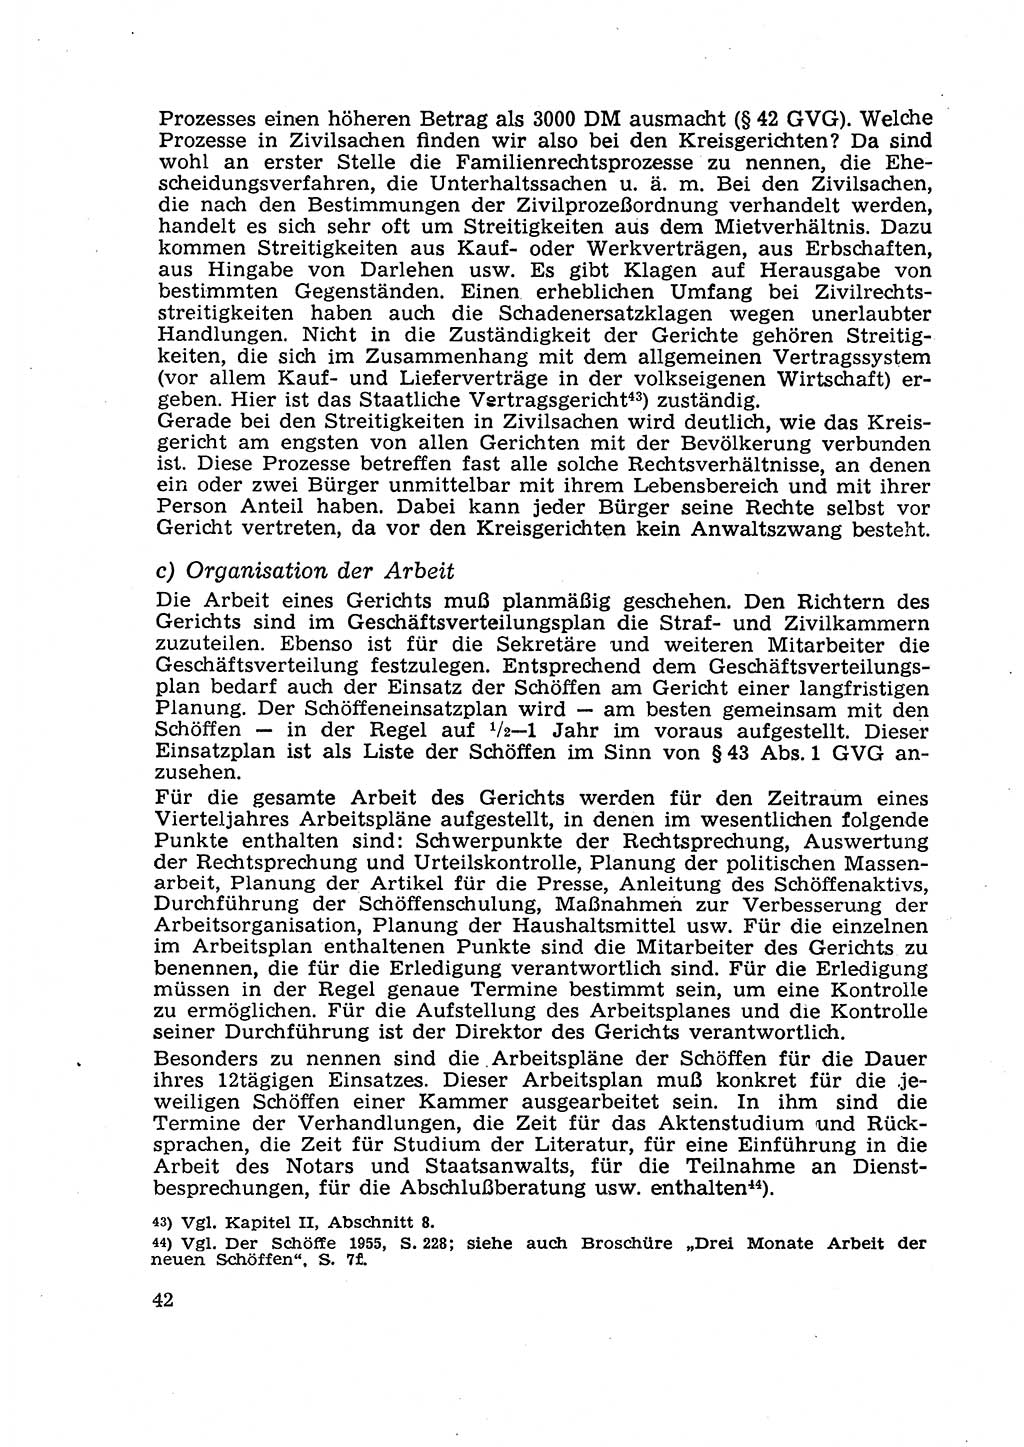 Gericht und Rechtsprechung in der Deutschen Demokratischen Republik (DDR) 1956, Seite 42 (Ger. Rechtspr. DDR 1956, S. 42)